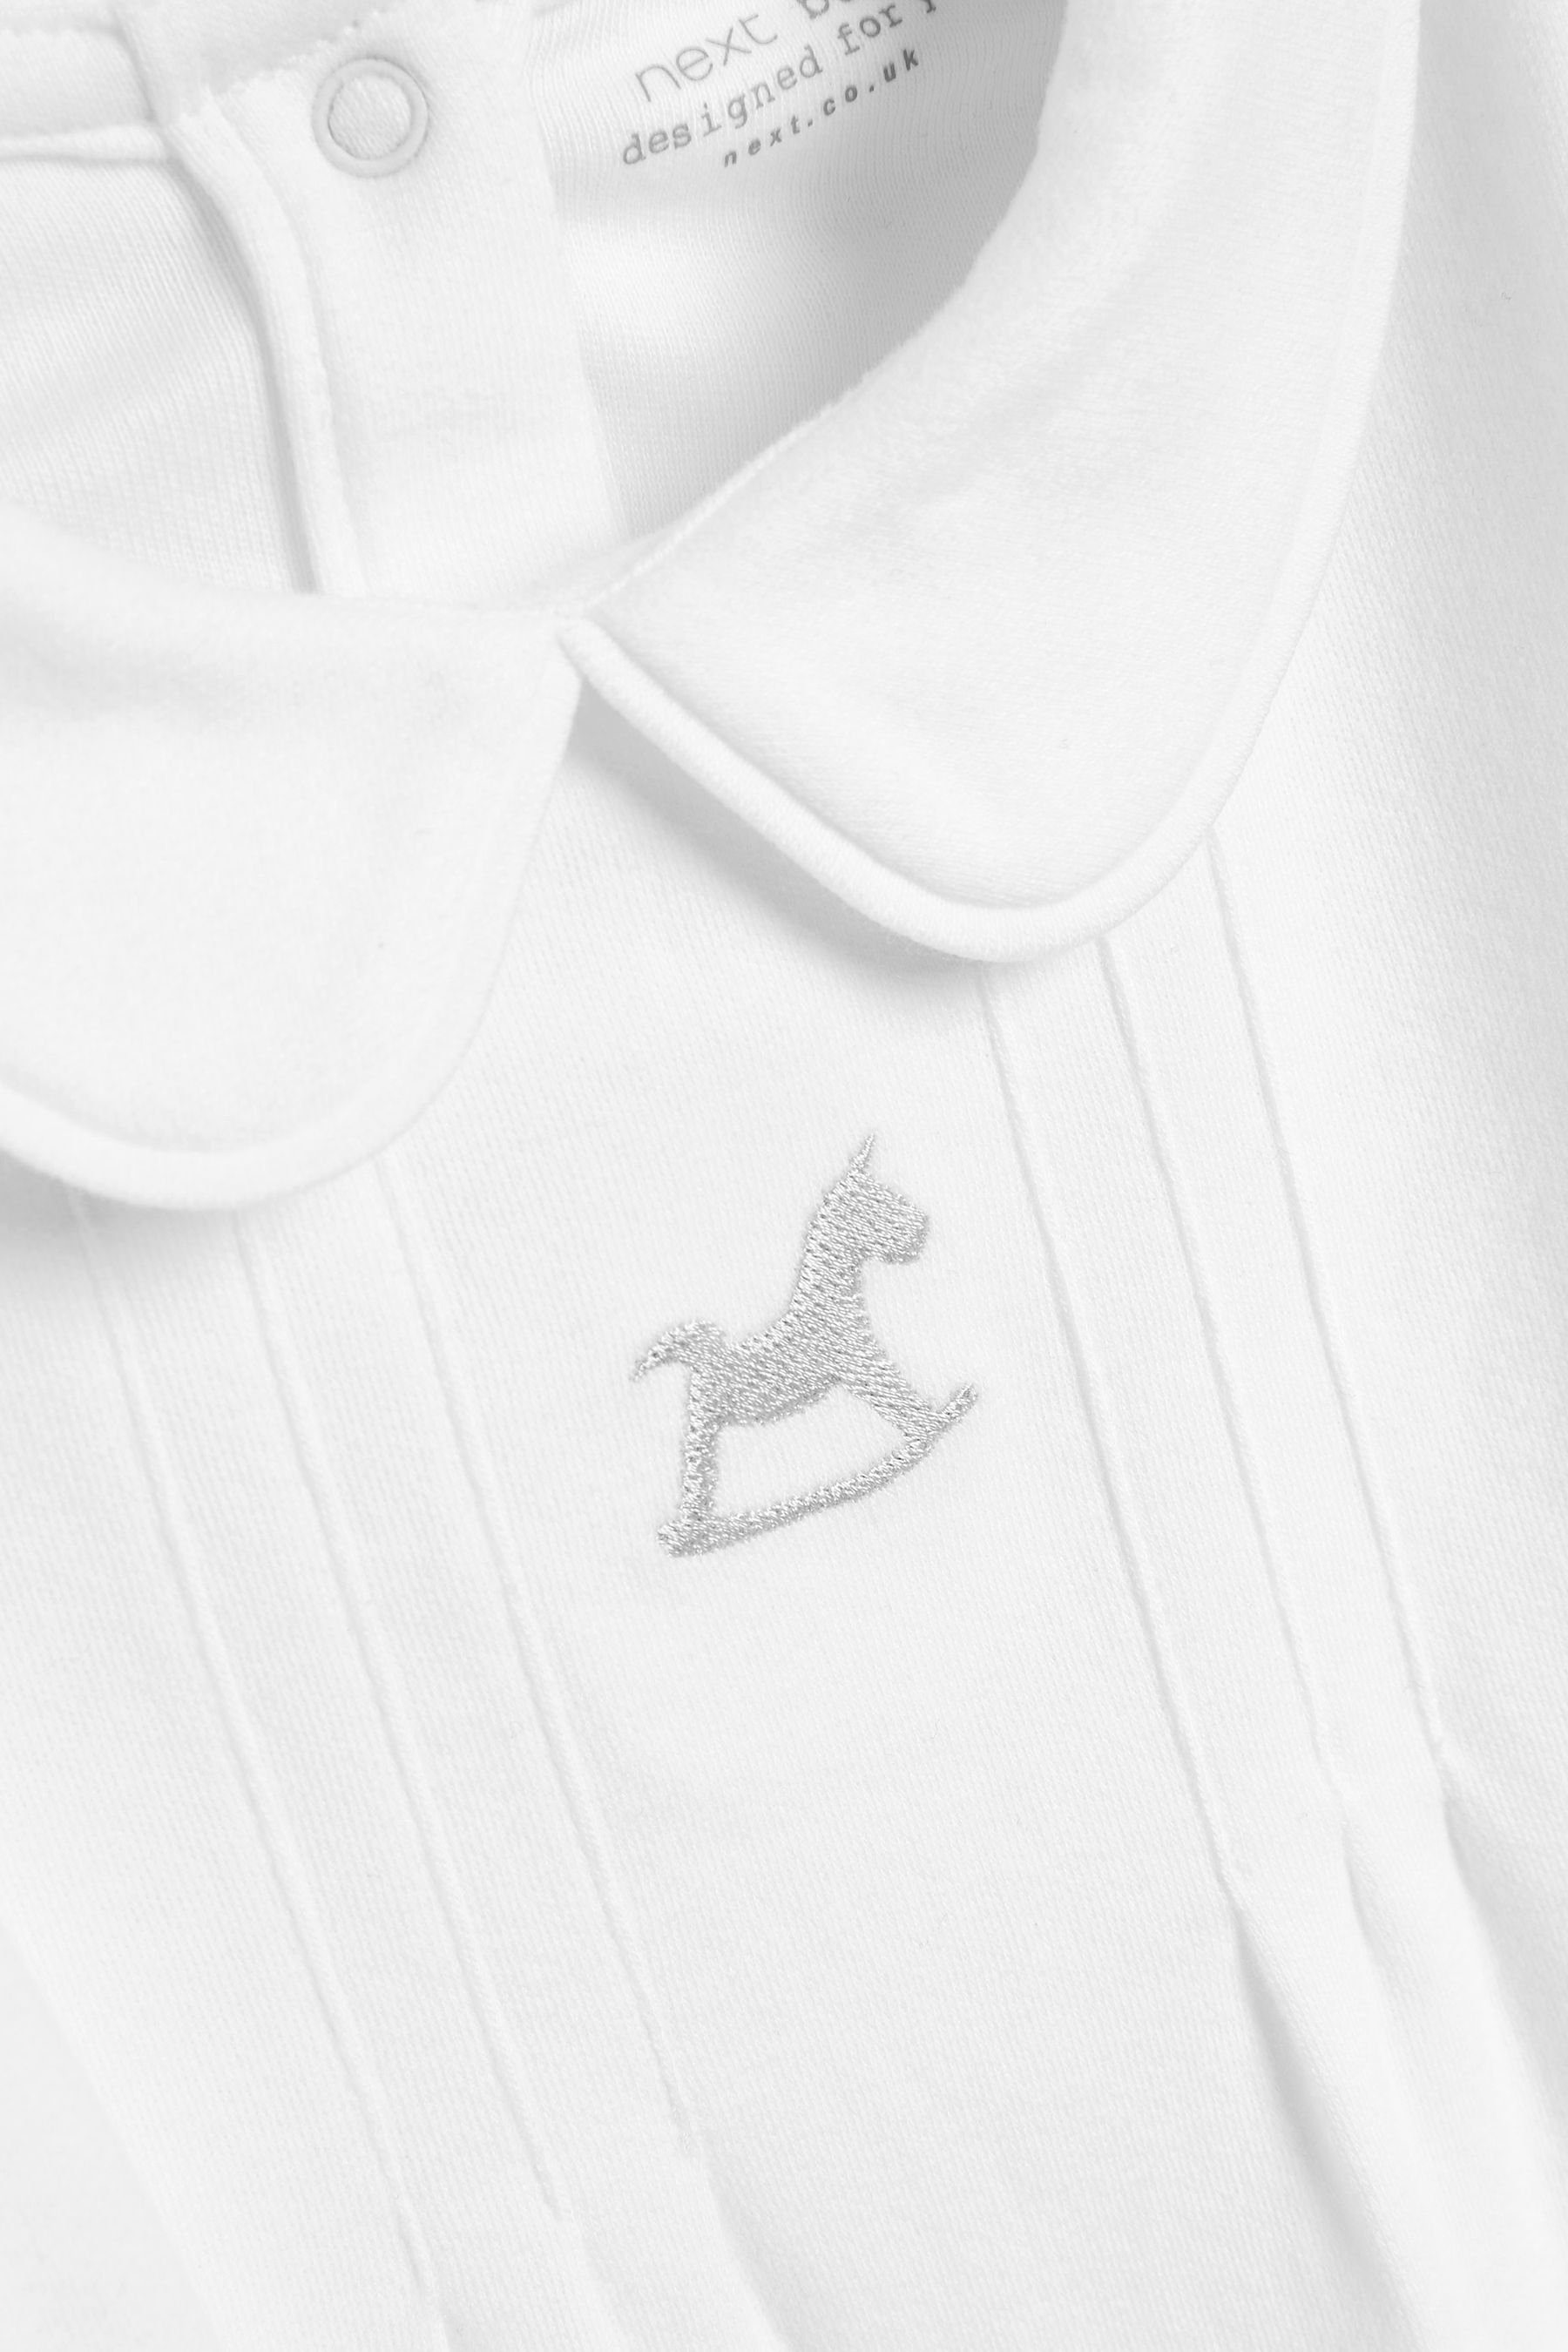 Next Schlafoverall Schicker Strampler-Schlafanzug White (1-tlg)